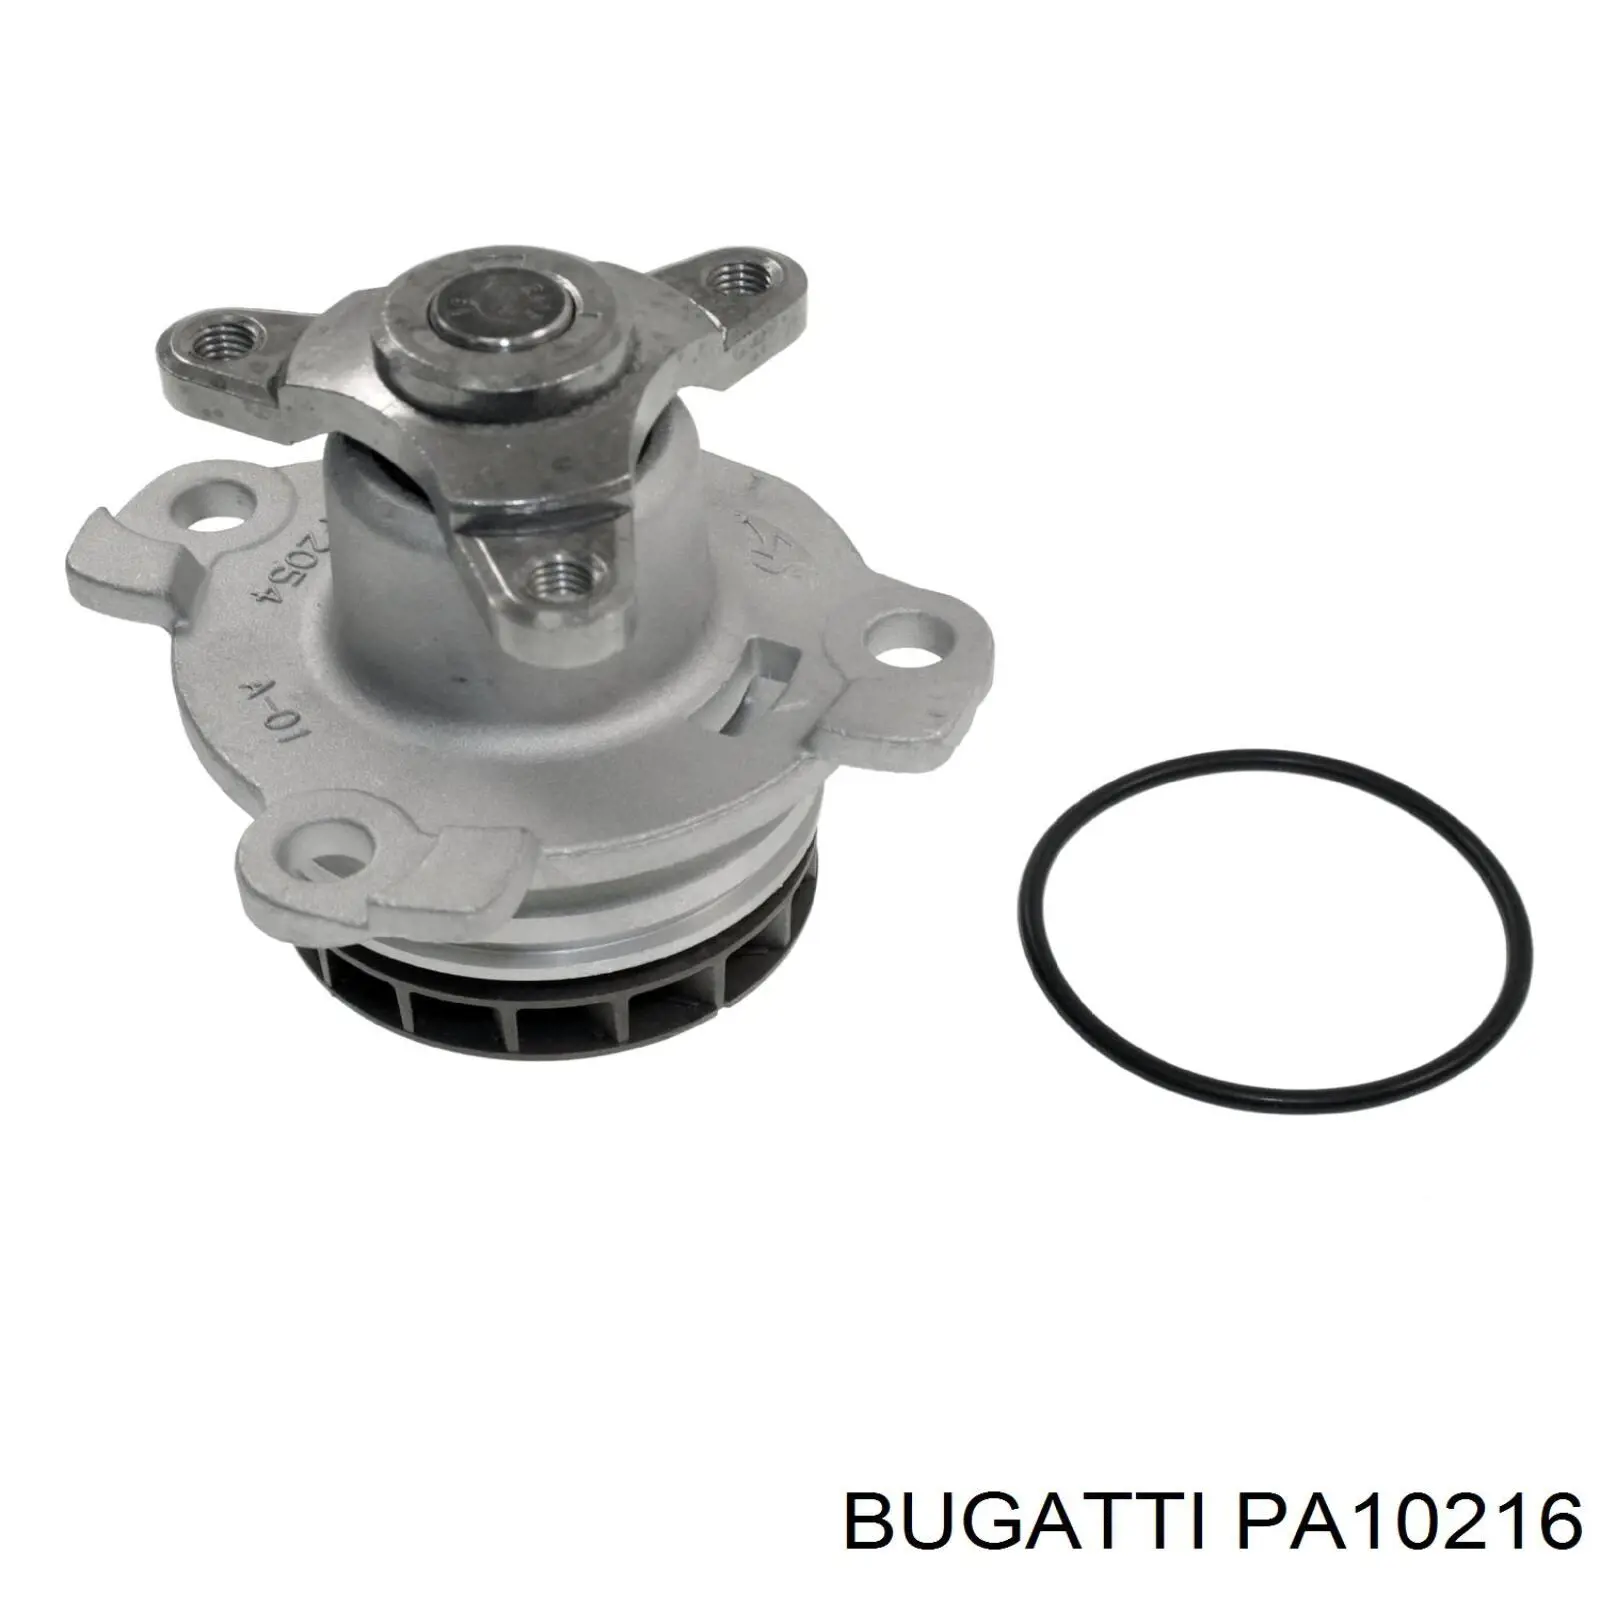 PA10216 Bugatti bomba de agua